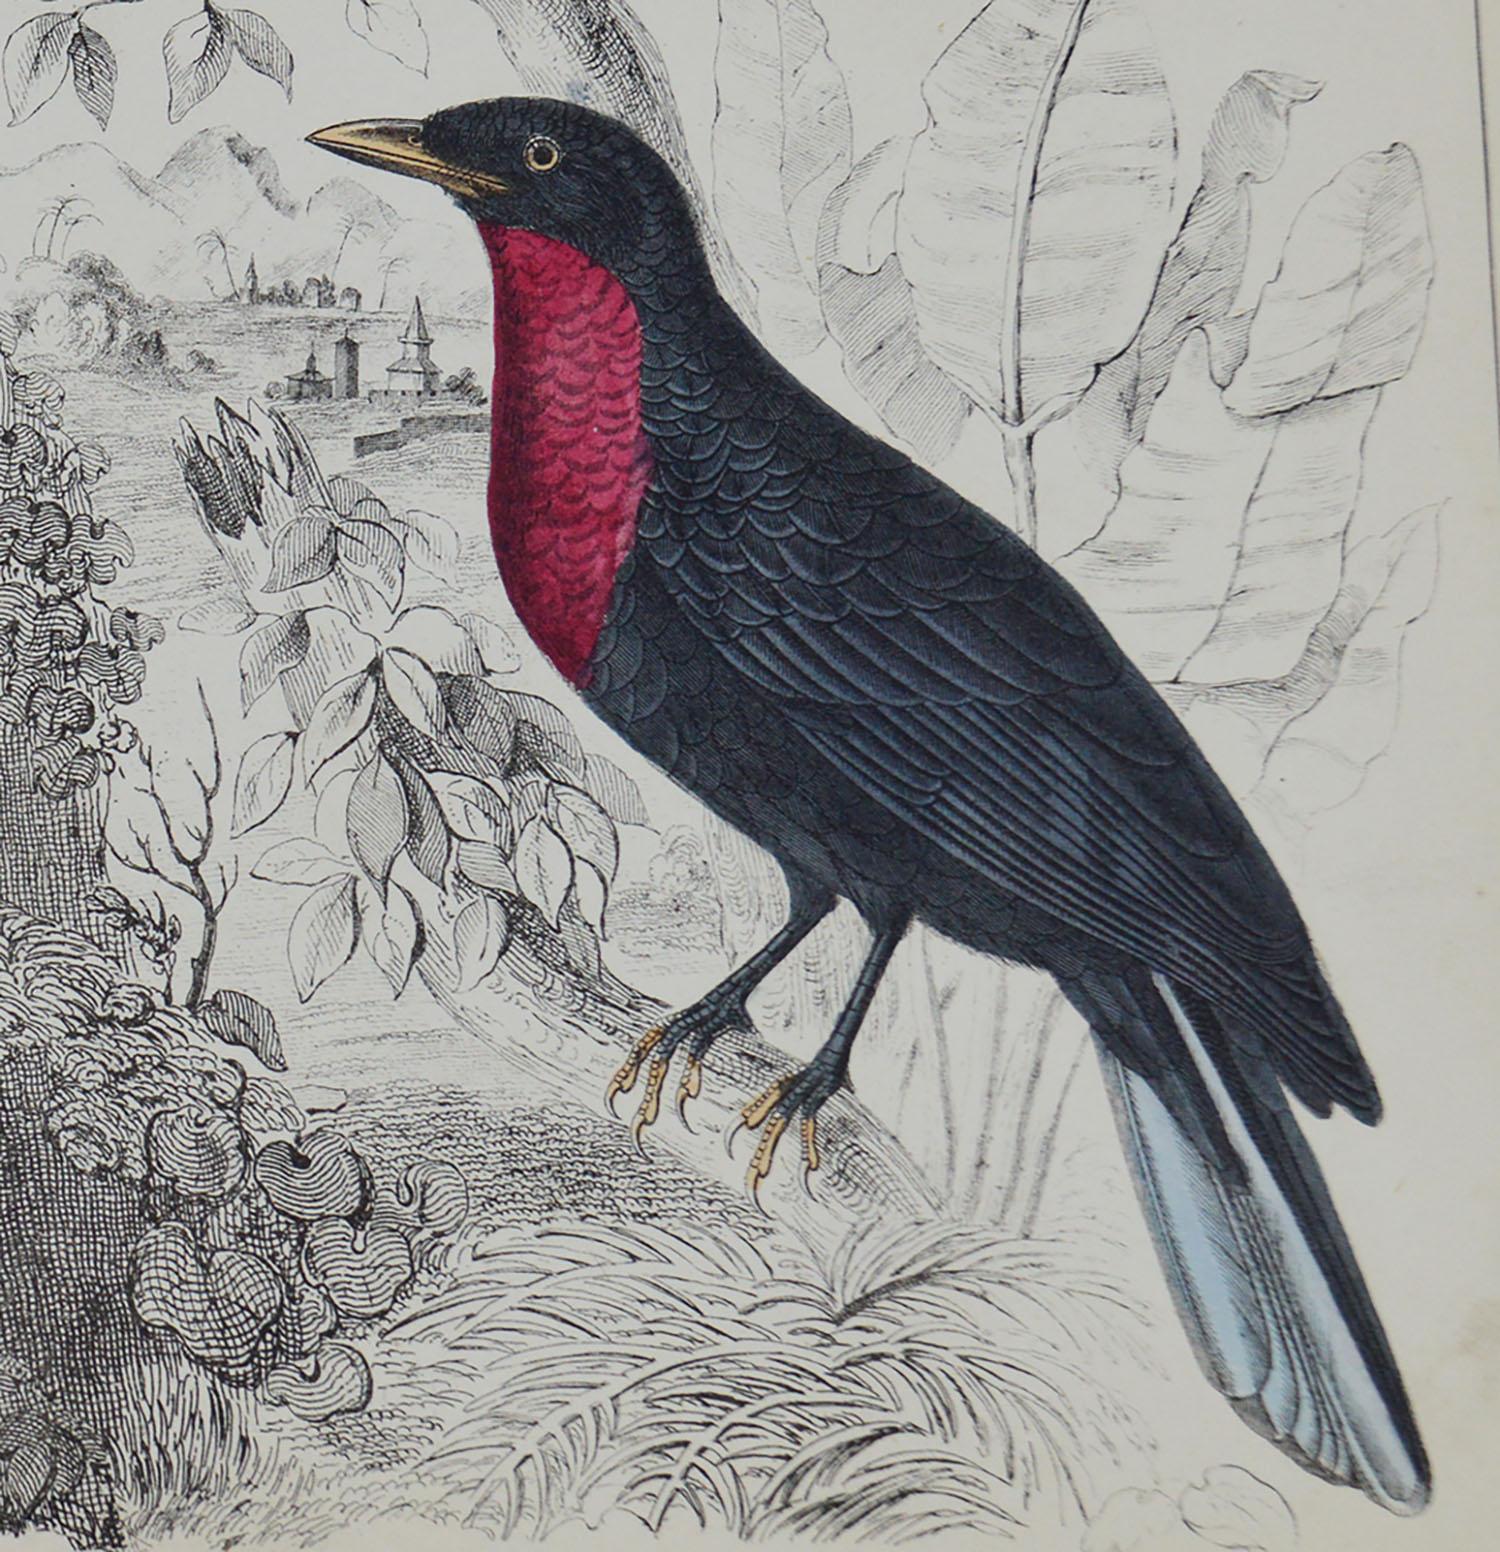 Folk Art Original Antique Print of a Fruit Crow, 1847 'Unframed'